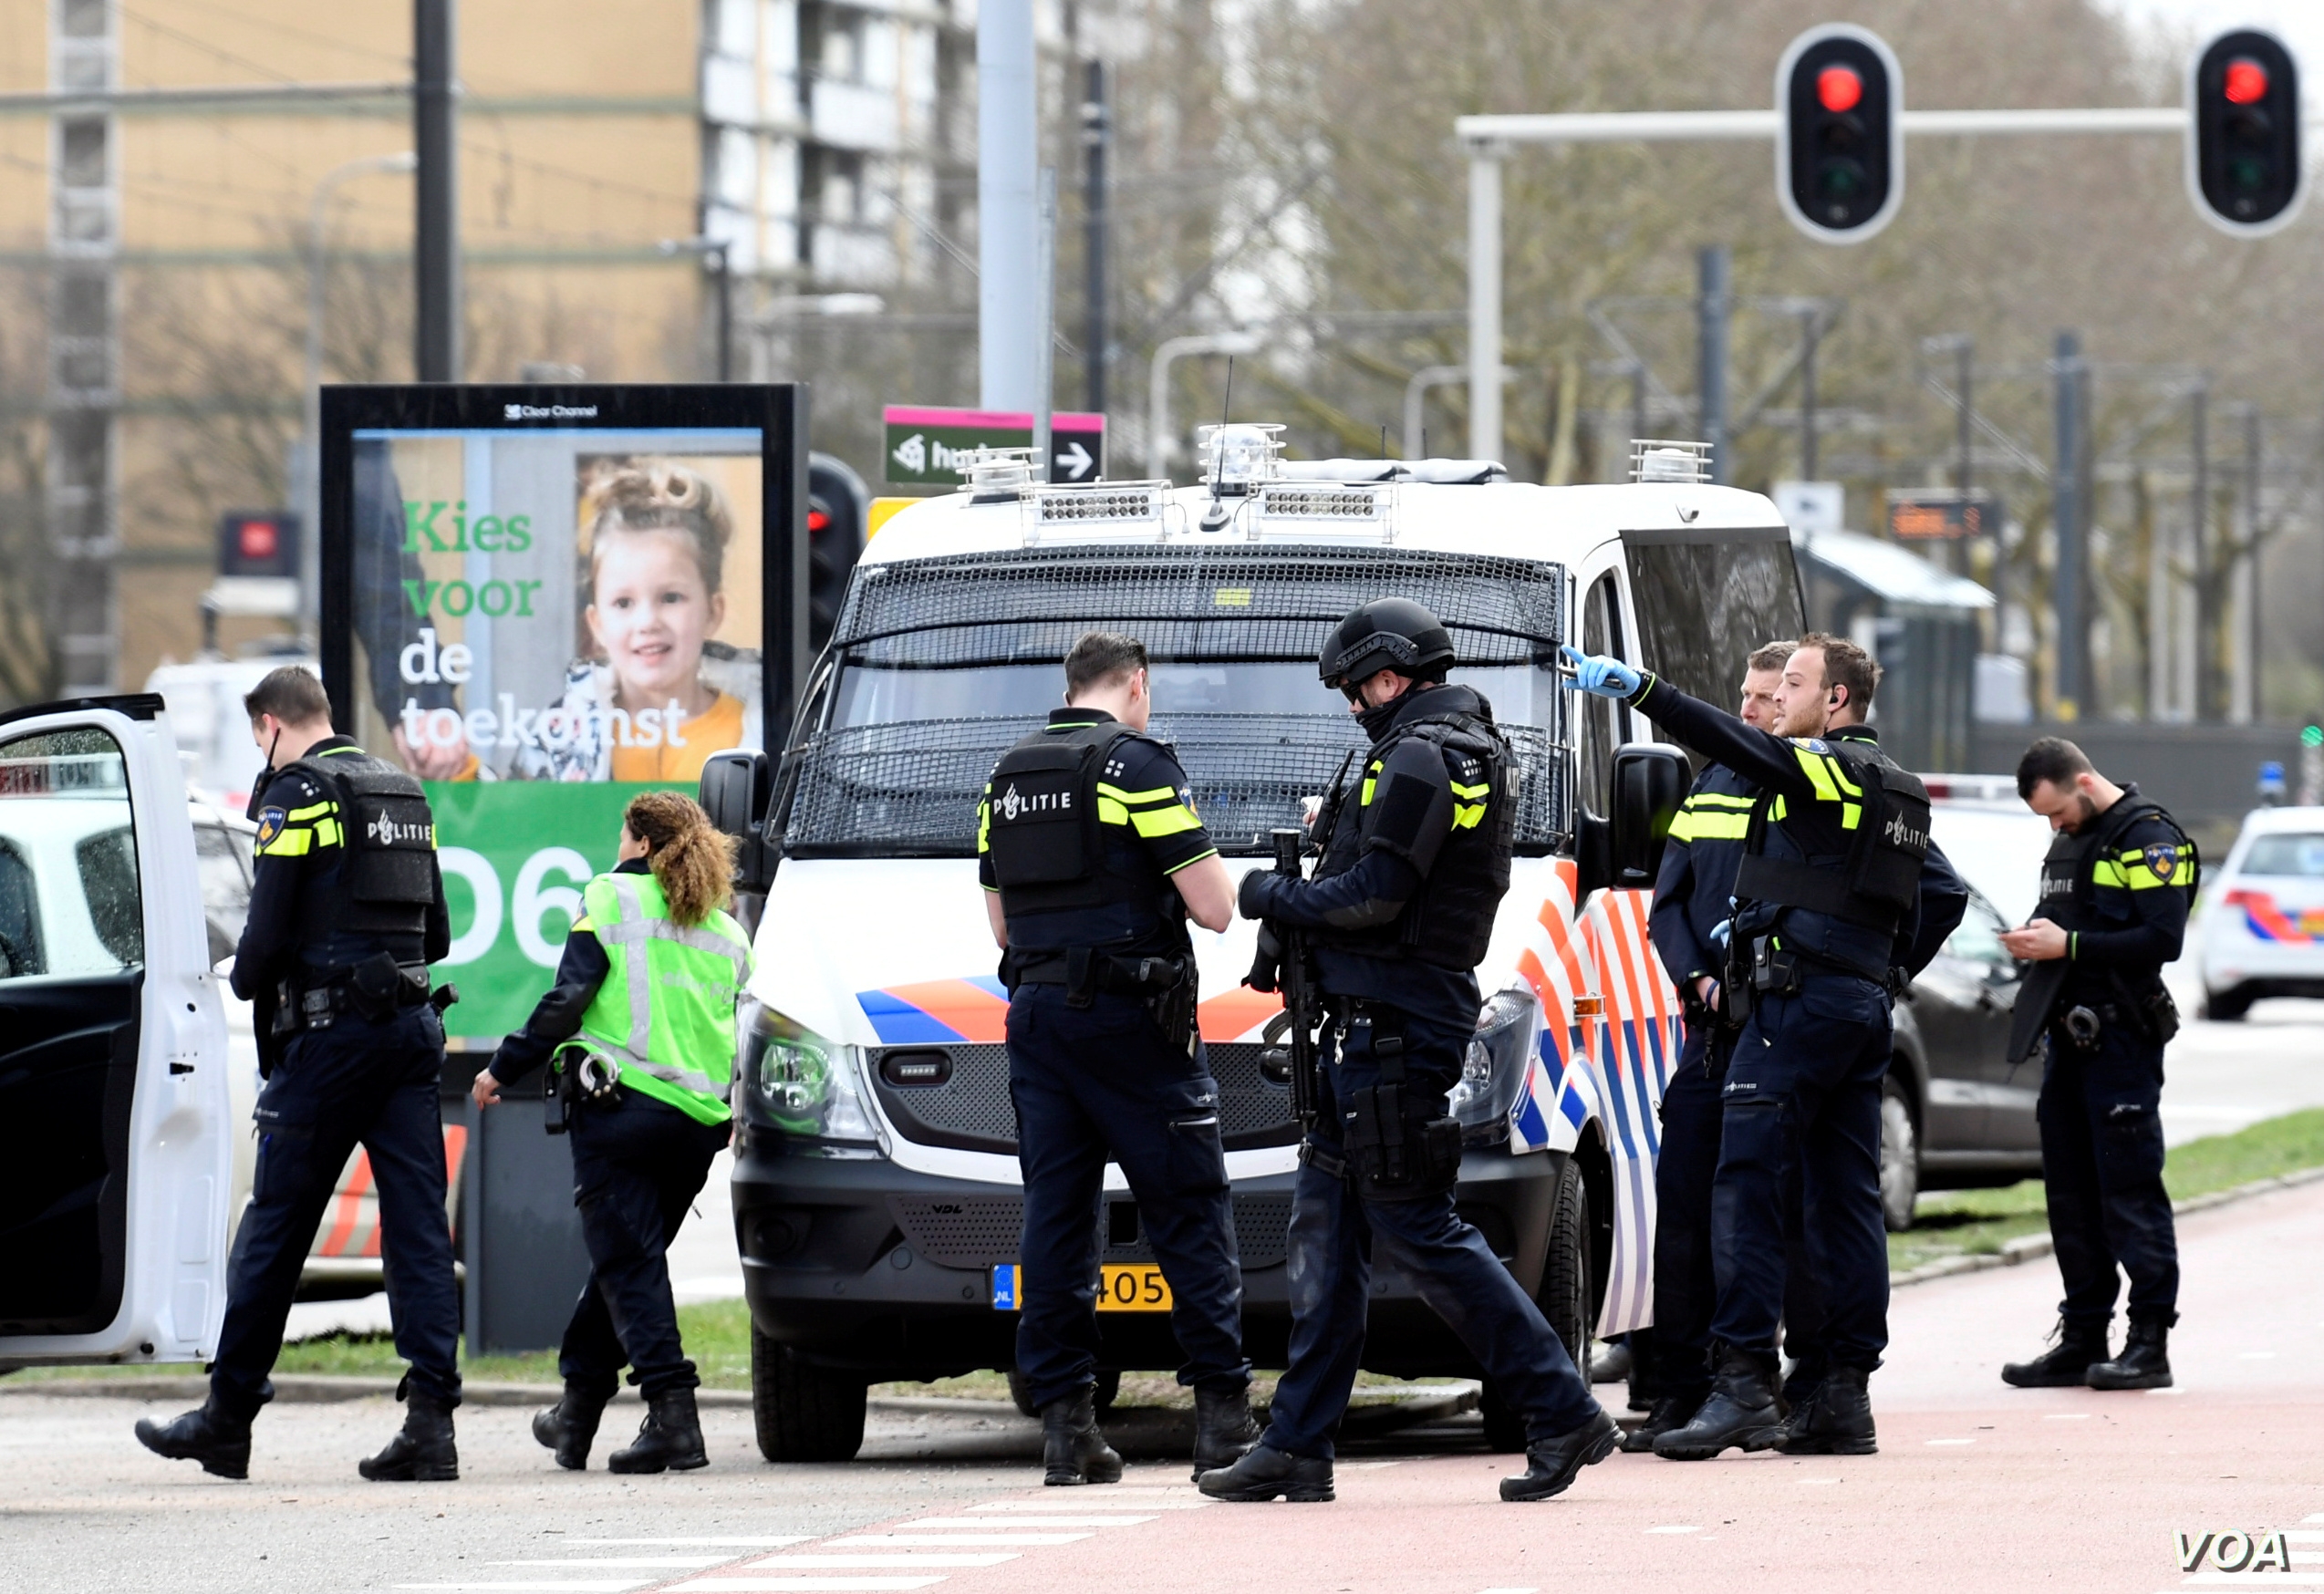 Dutch jihadist